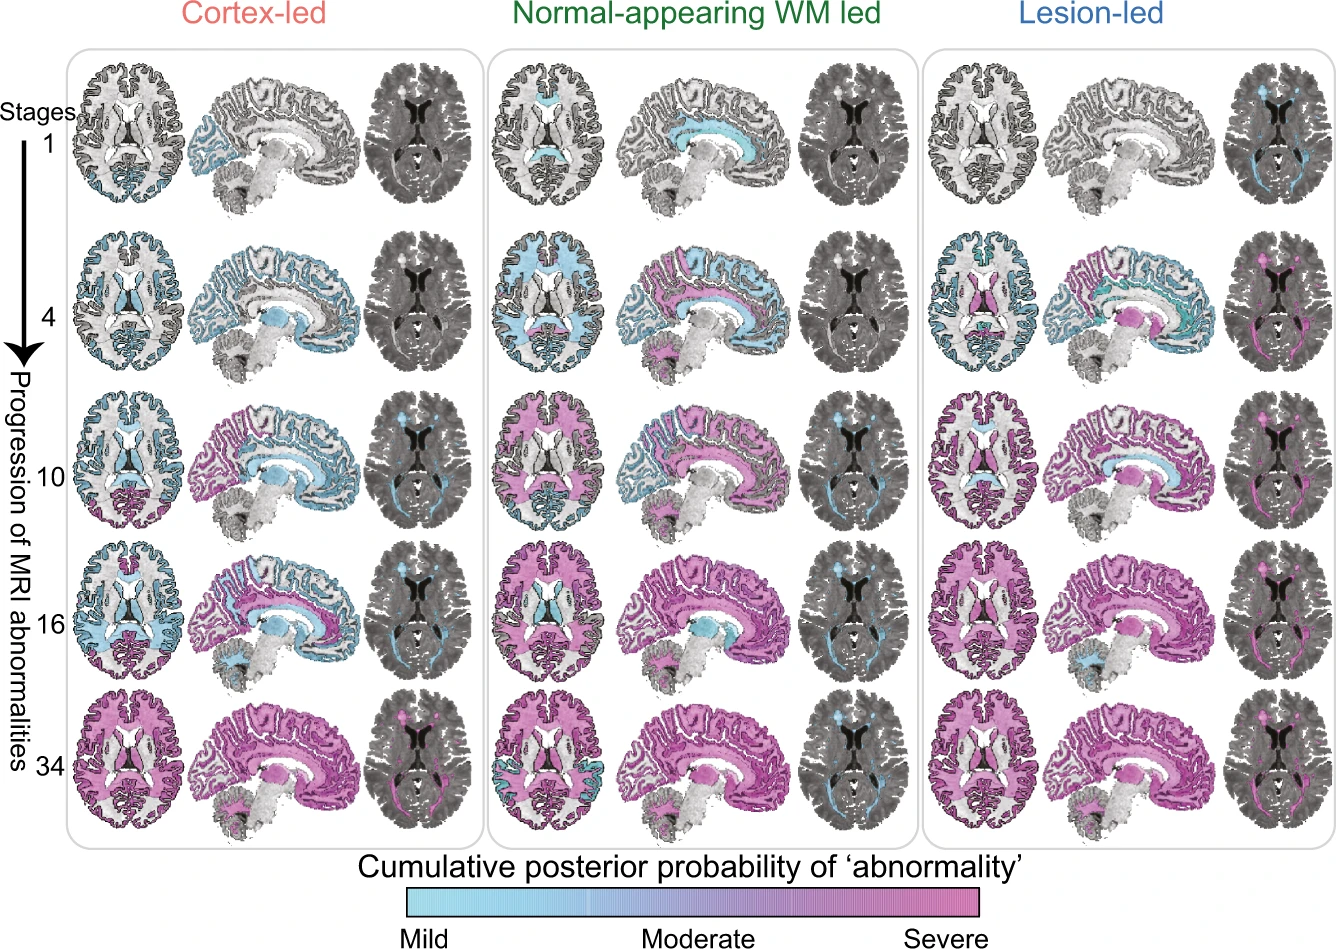 Identifying multiple sclerosis subtypes using unsupervised machine learning and MRI data